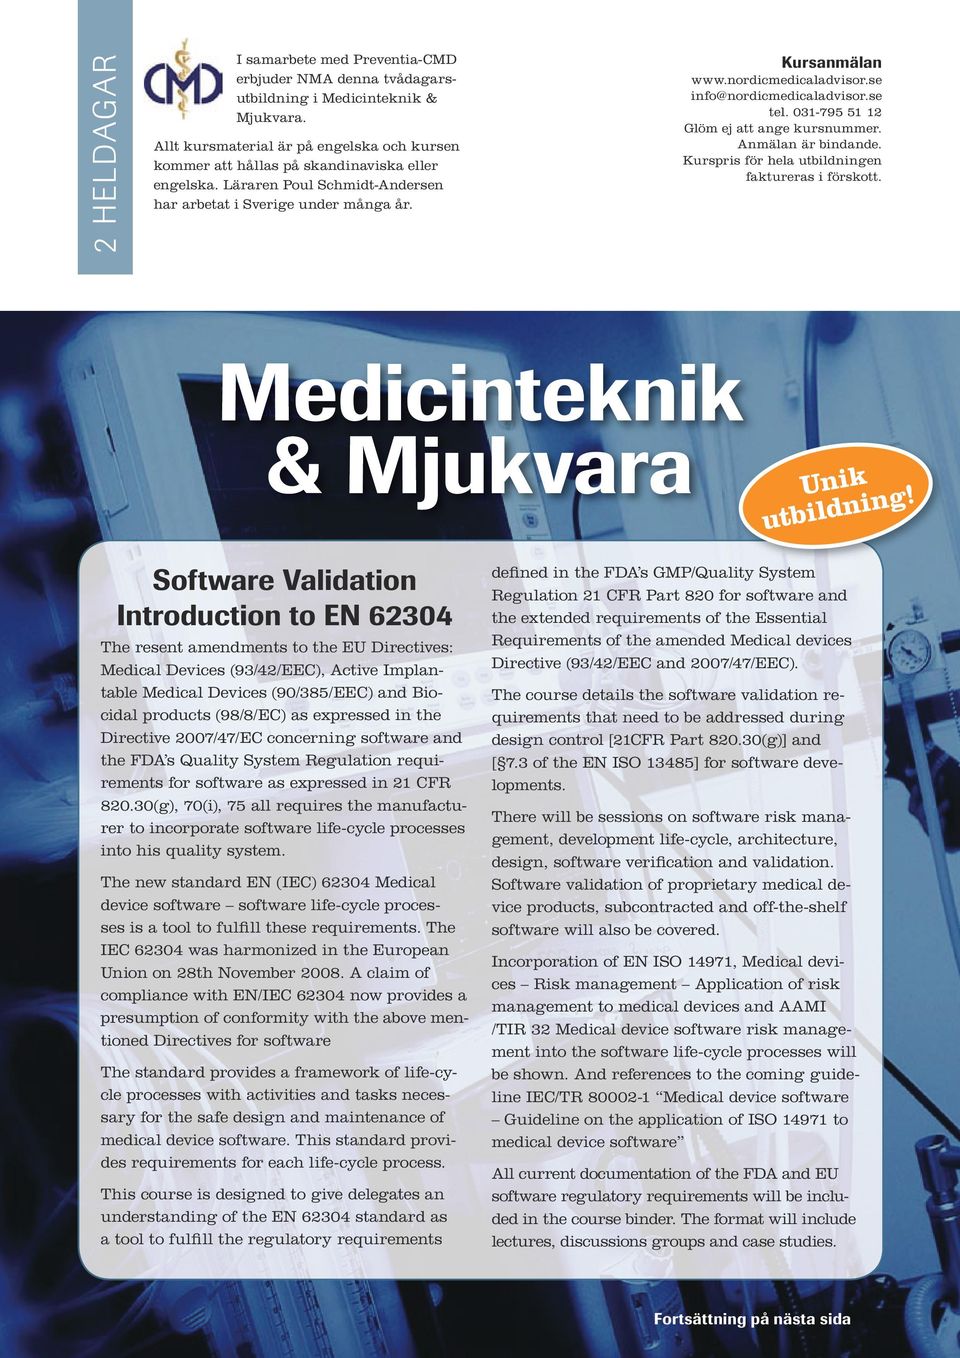 Medicinteknik & Mjukvara Unik utbildning!